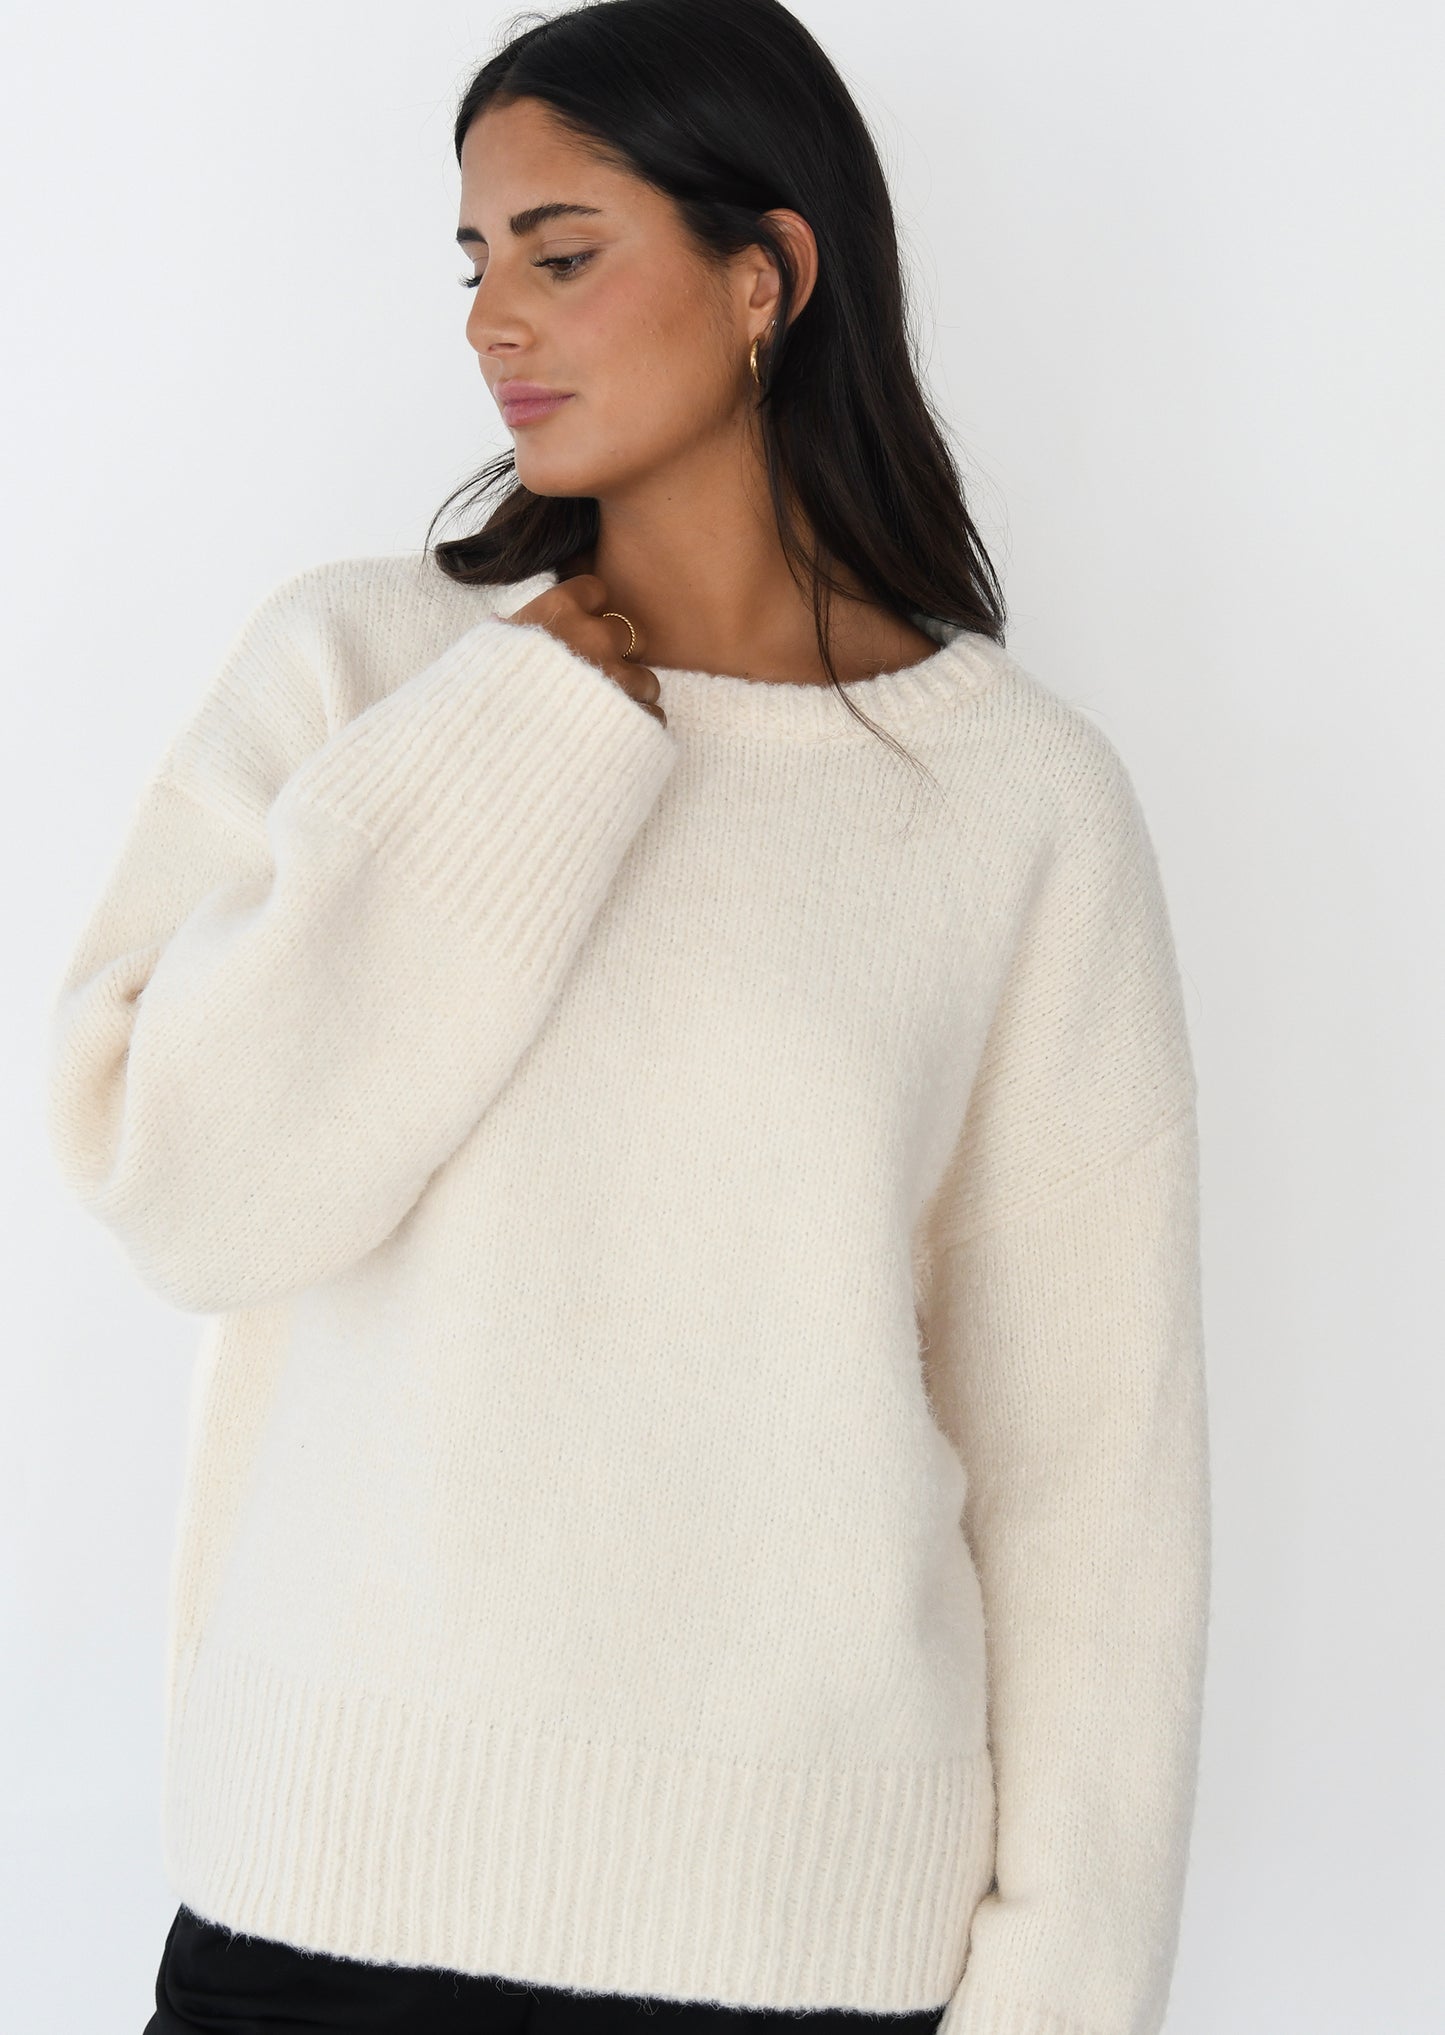 Oversize knit jumper